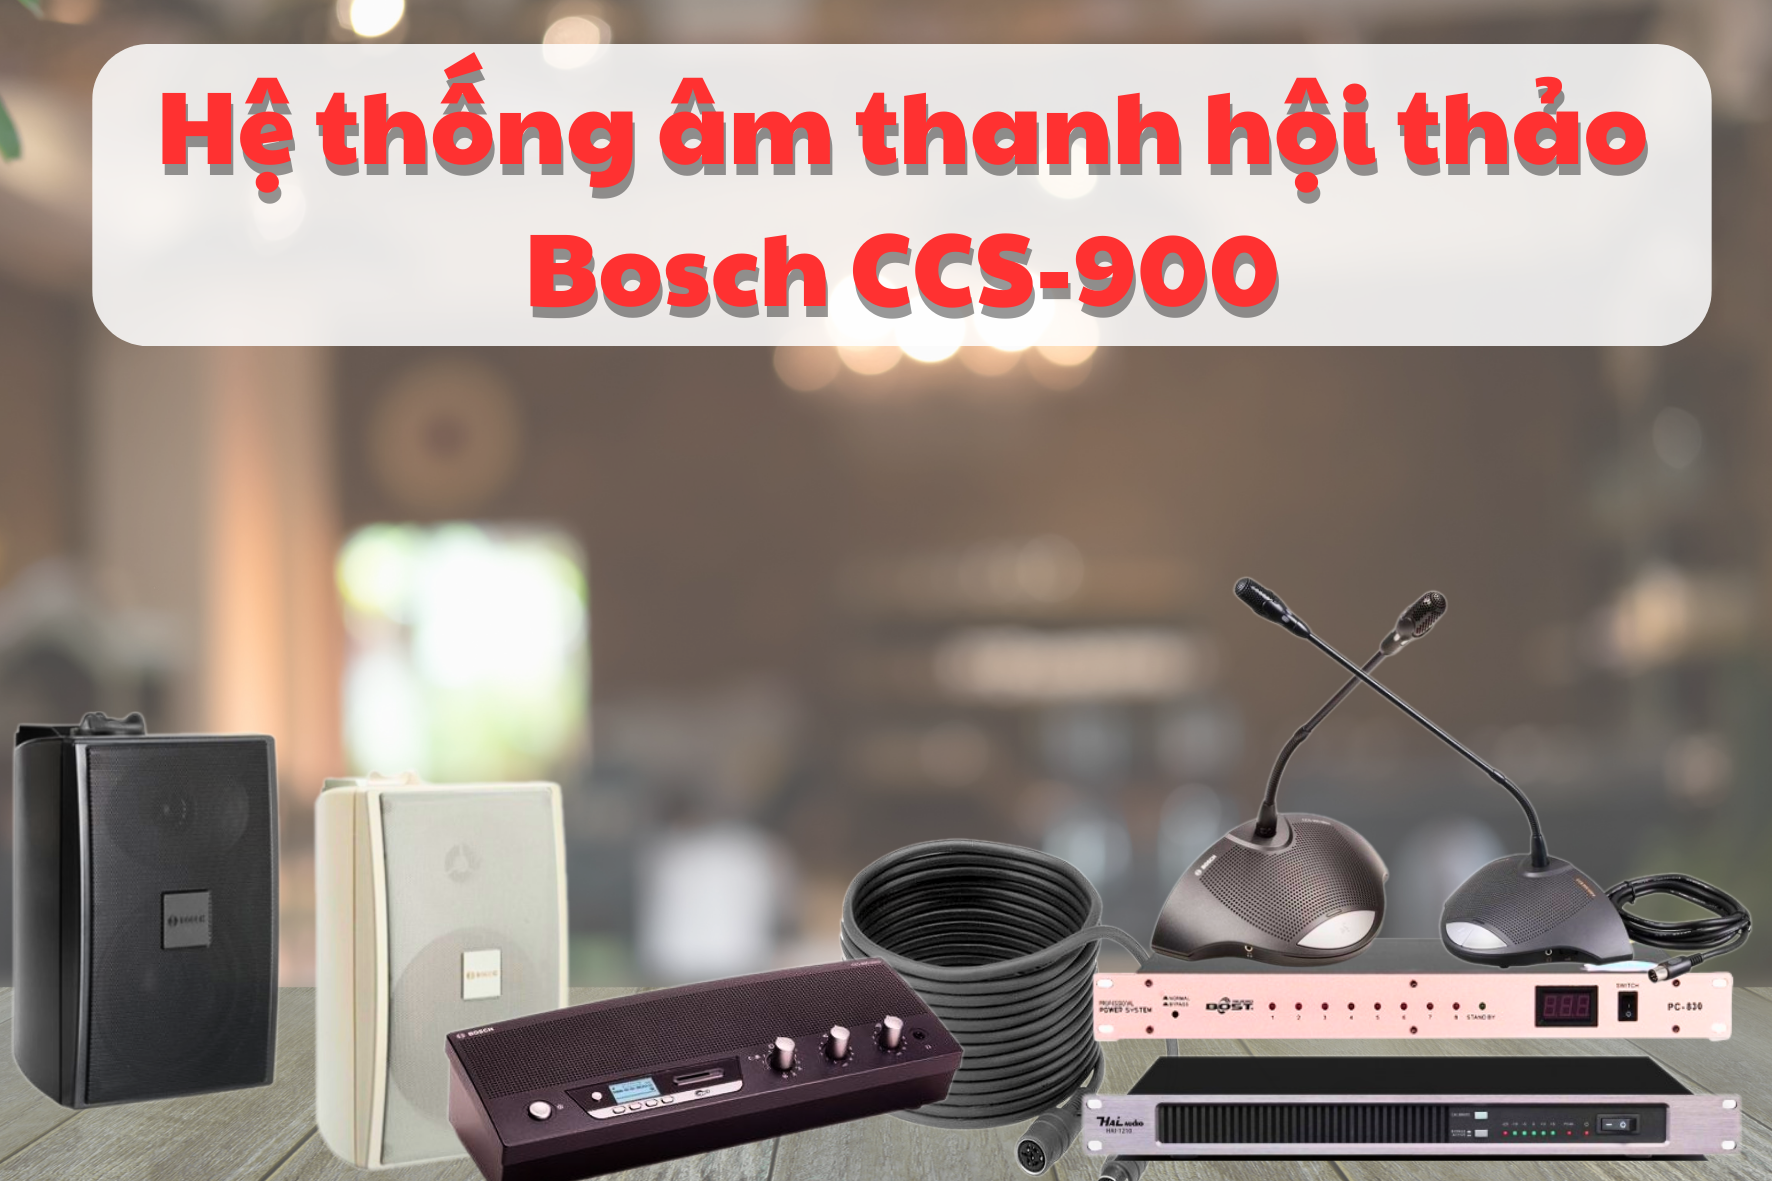 Dàn âm thanh hội thảo hãng Bosch CCS-900